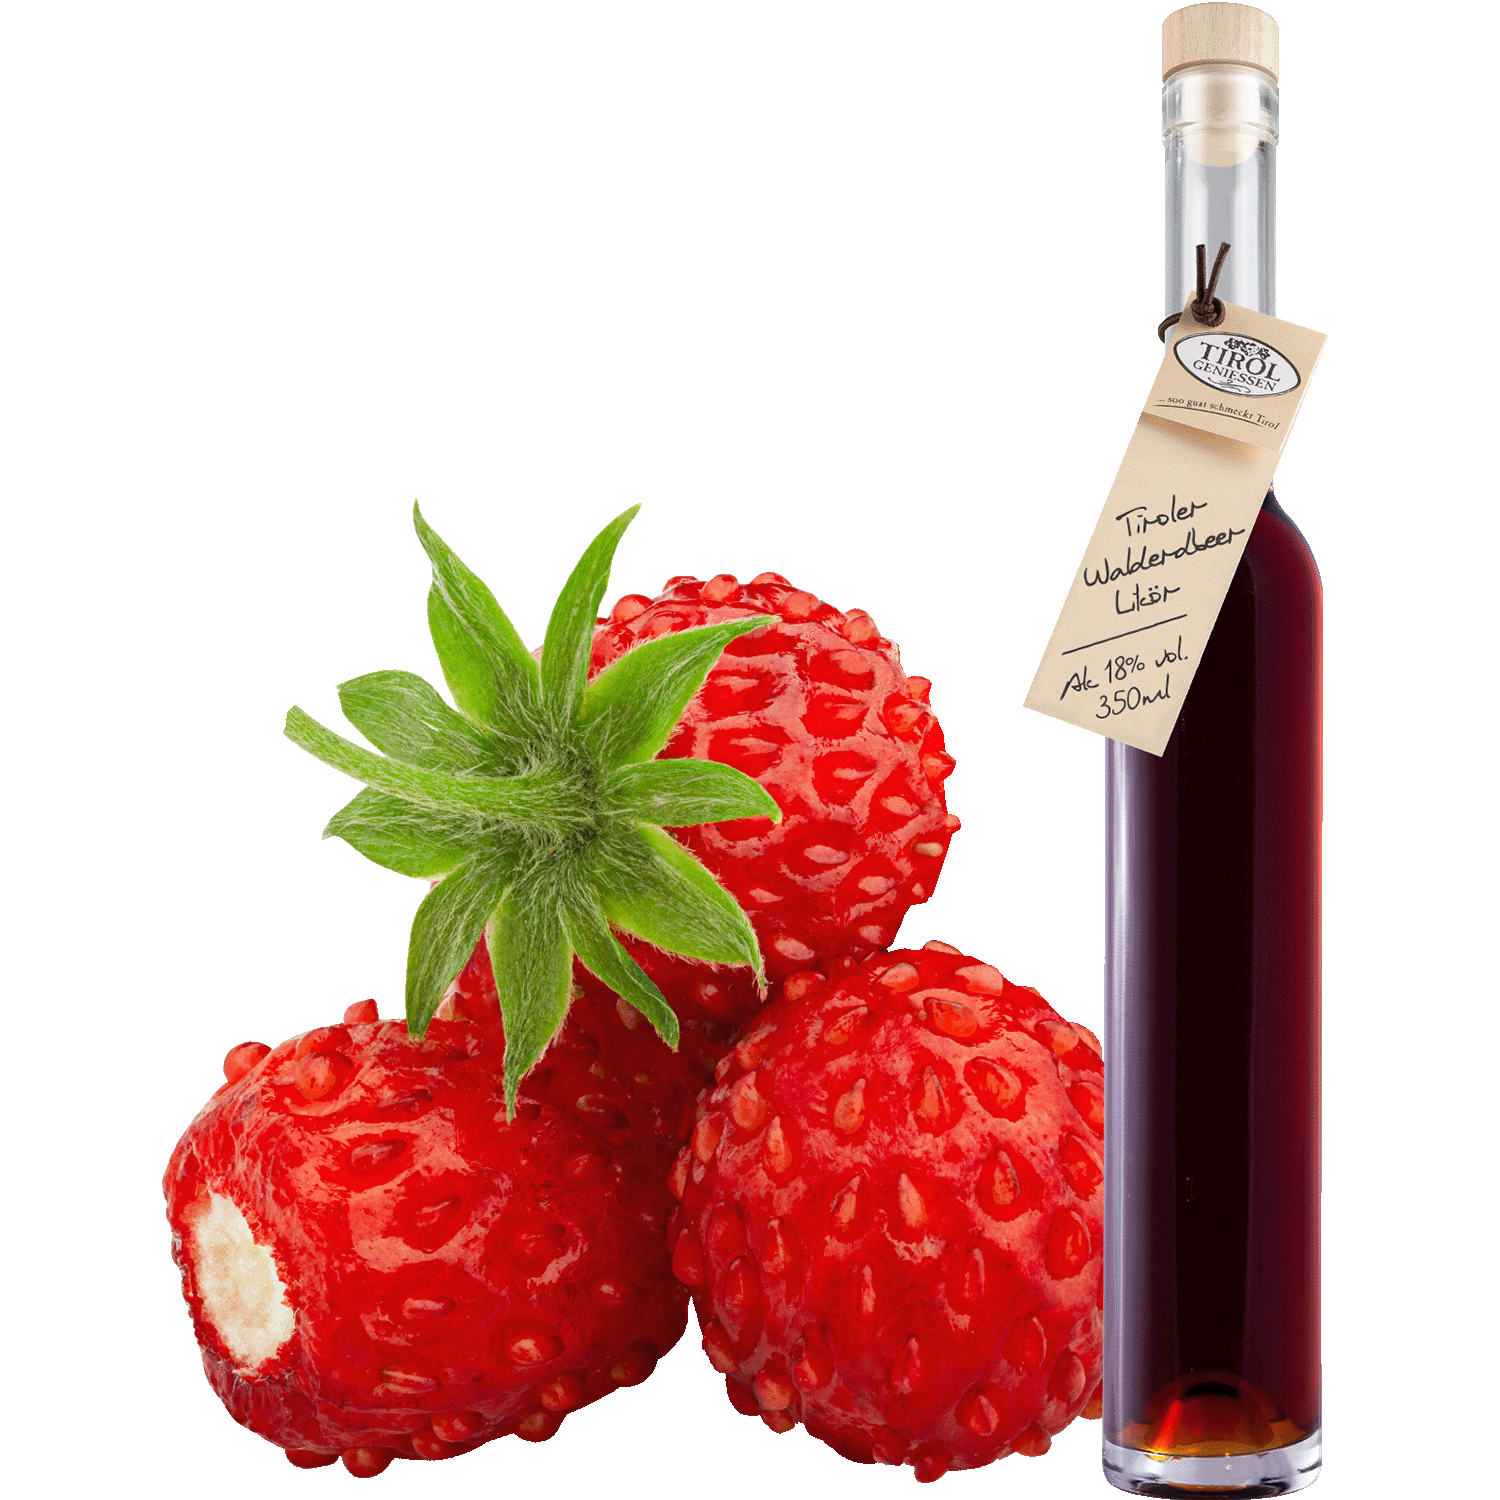 Wild Strawberry Liqueur in gift bottle from Austria from Tirol Geniessen